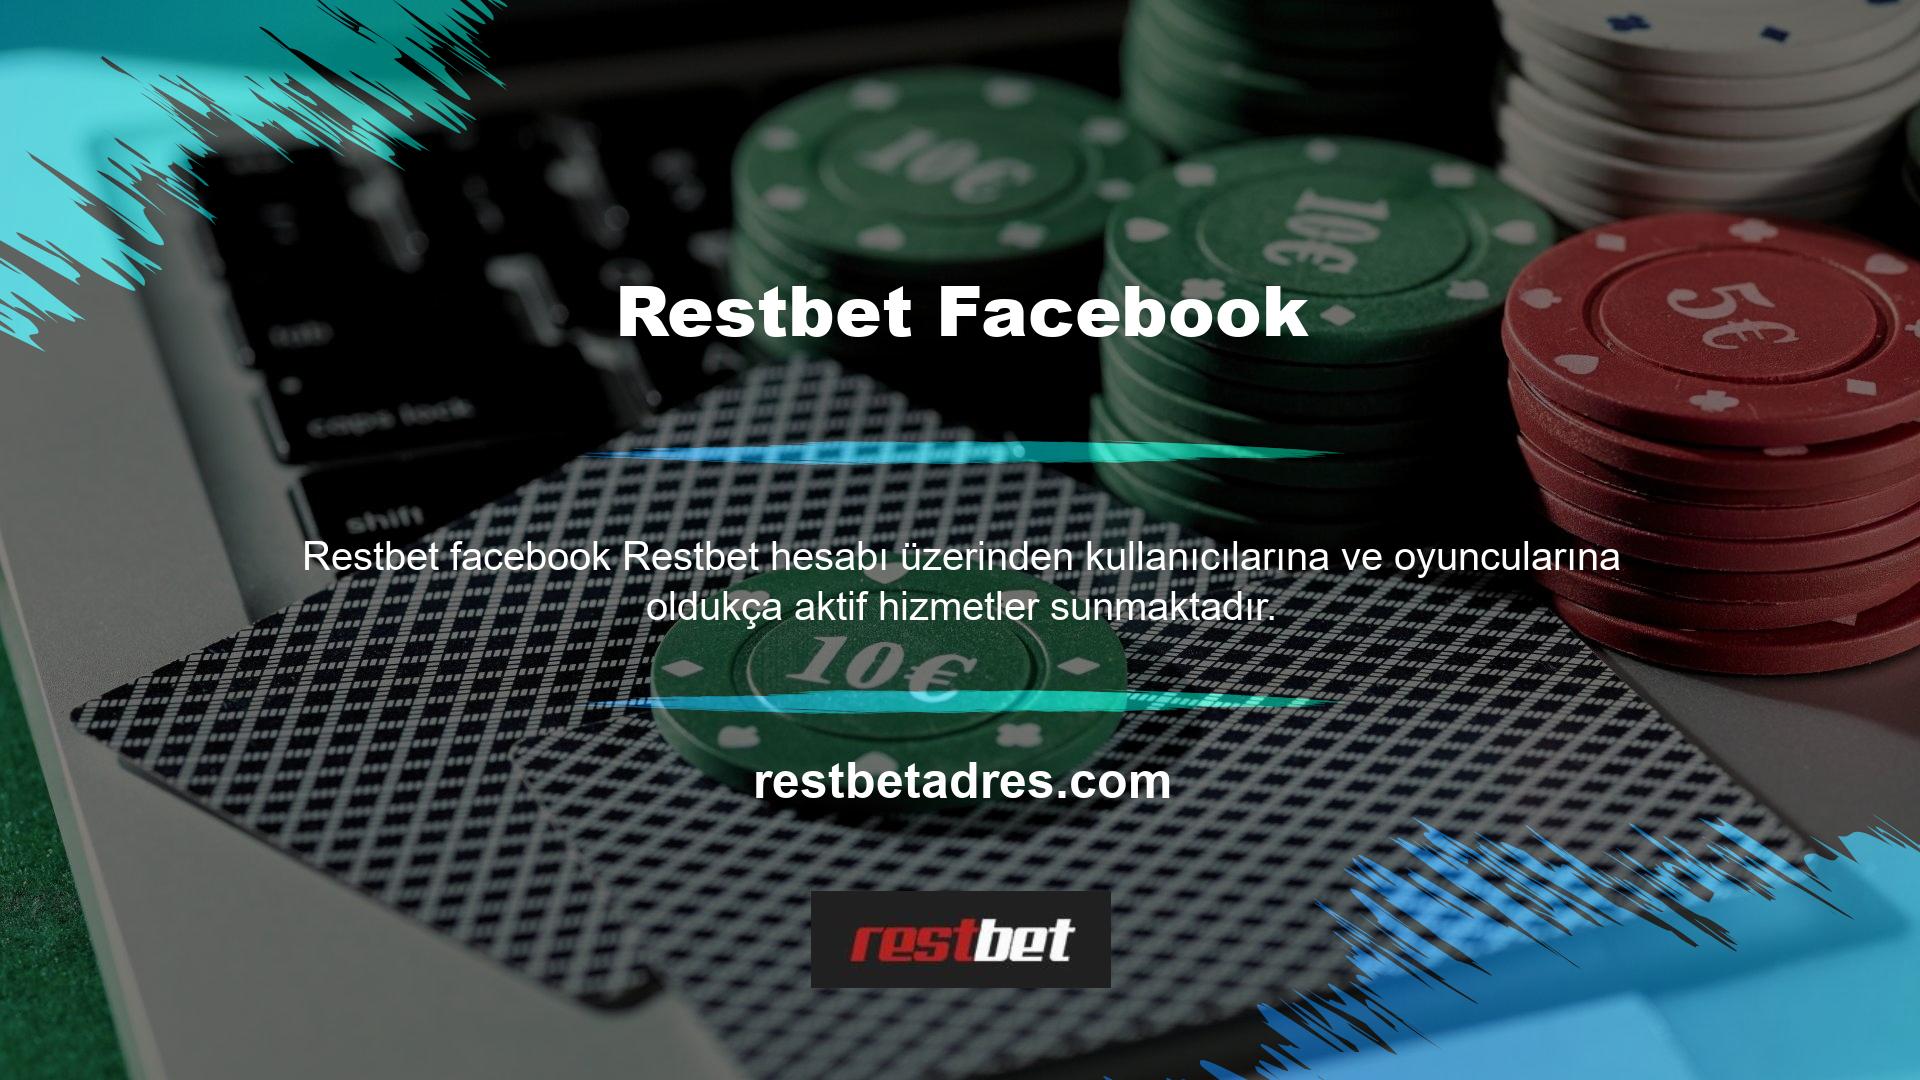 Oyuncuların herhangi bir sorusu veya şikayeti olması durumunda Restbet Facebook Blackjack Facebook hesabı üzerinden Restbet yöneticisi ile iletişime geçebilir ve soru veya şikayetlerini site yöneticisine iletebilirler